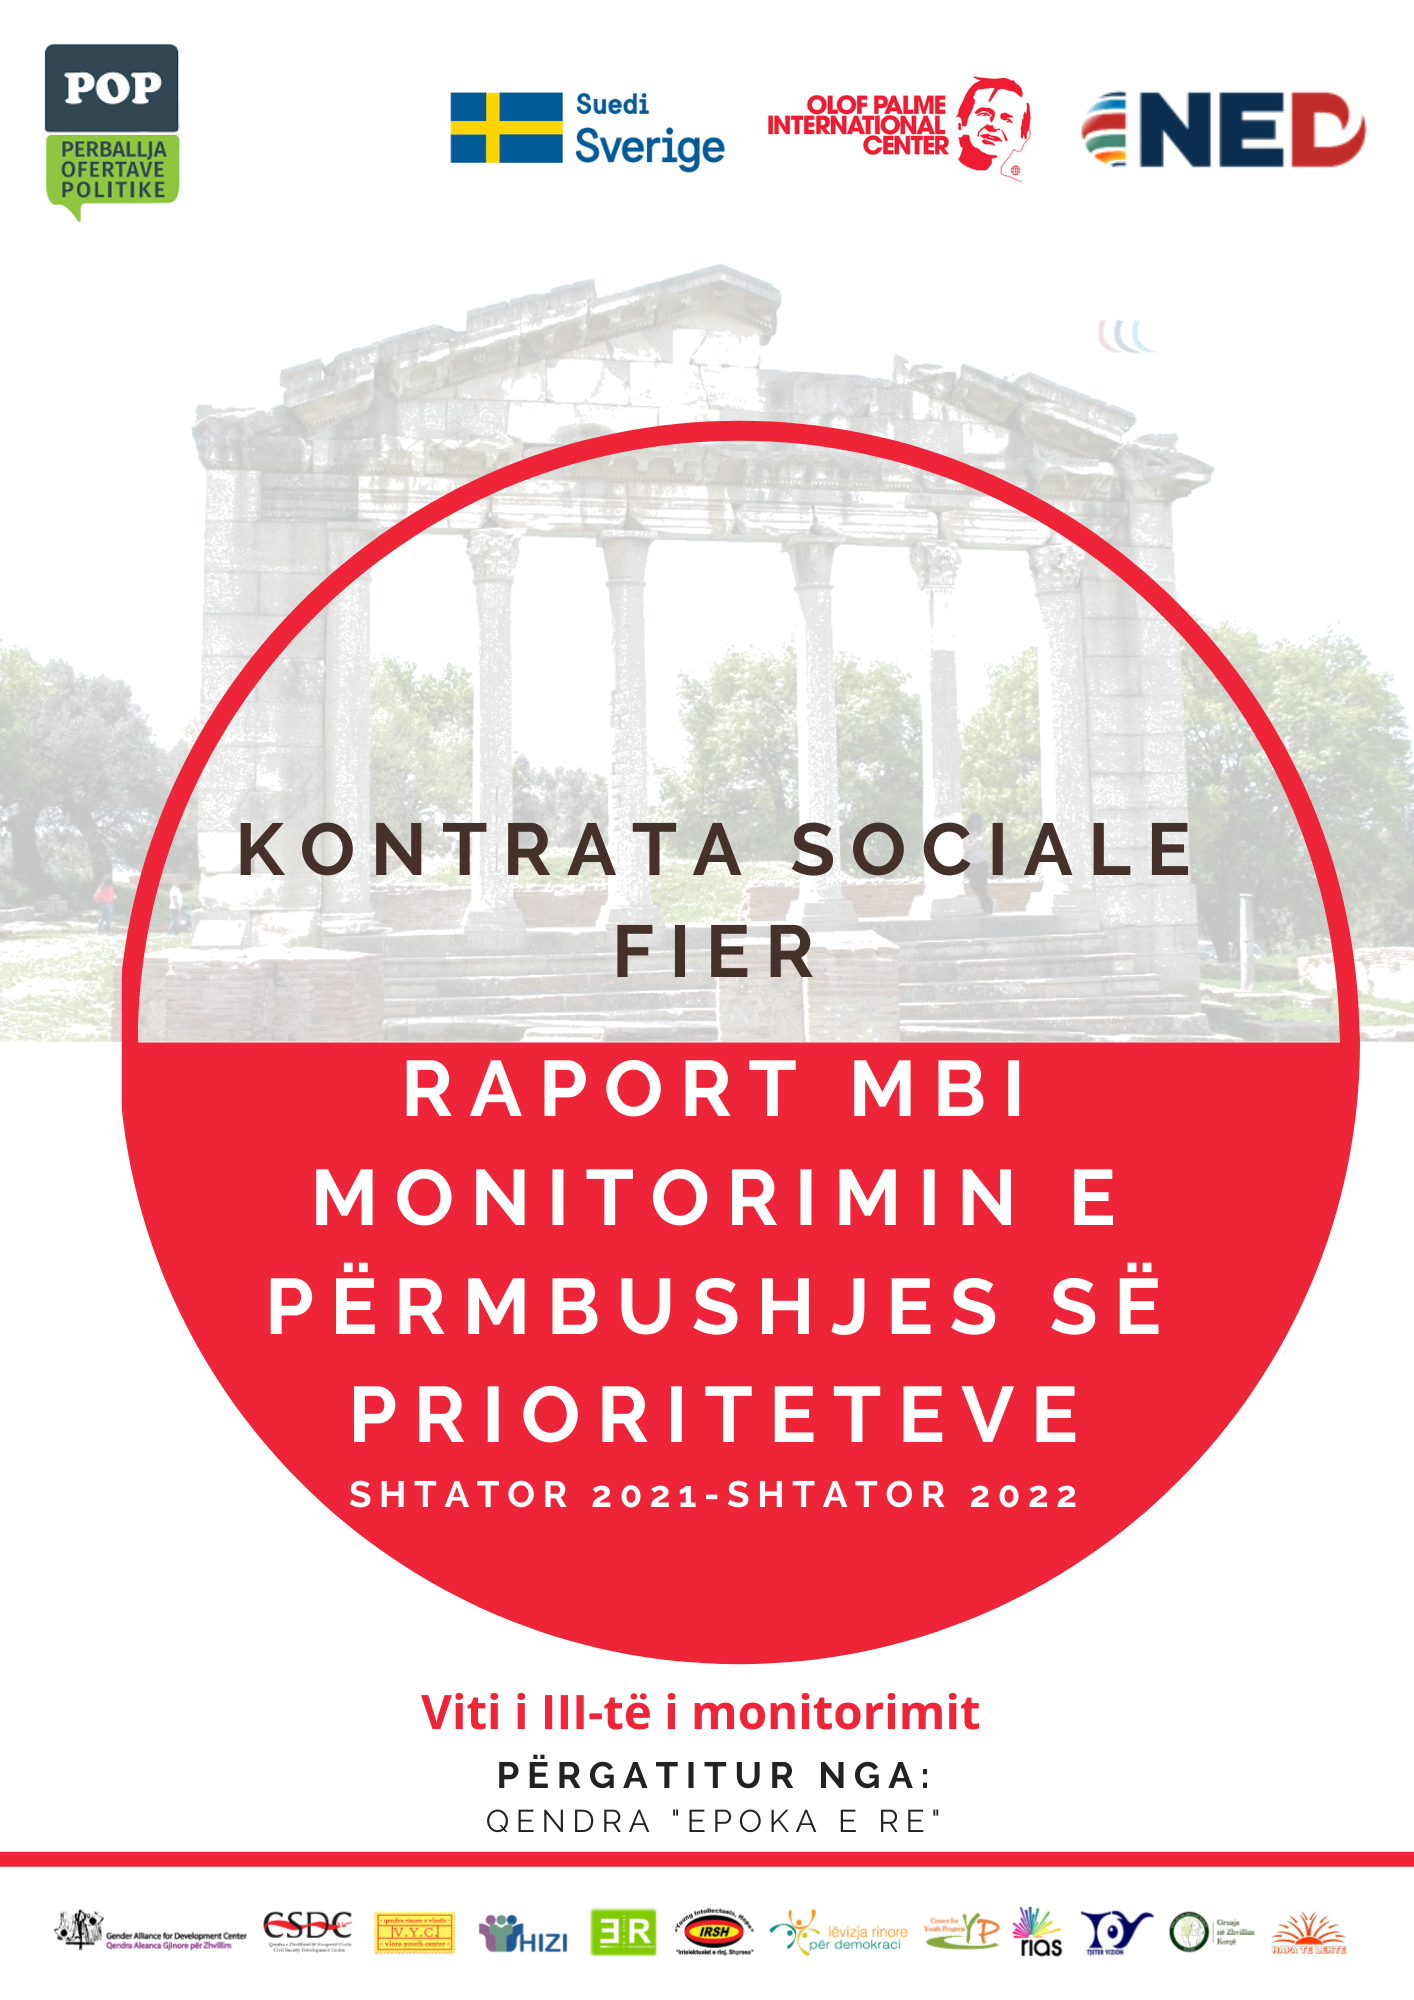 Fier_Raporti i tretë monitorues i Kontratës Sociale shtator 2021-shtator 2022